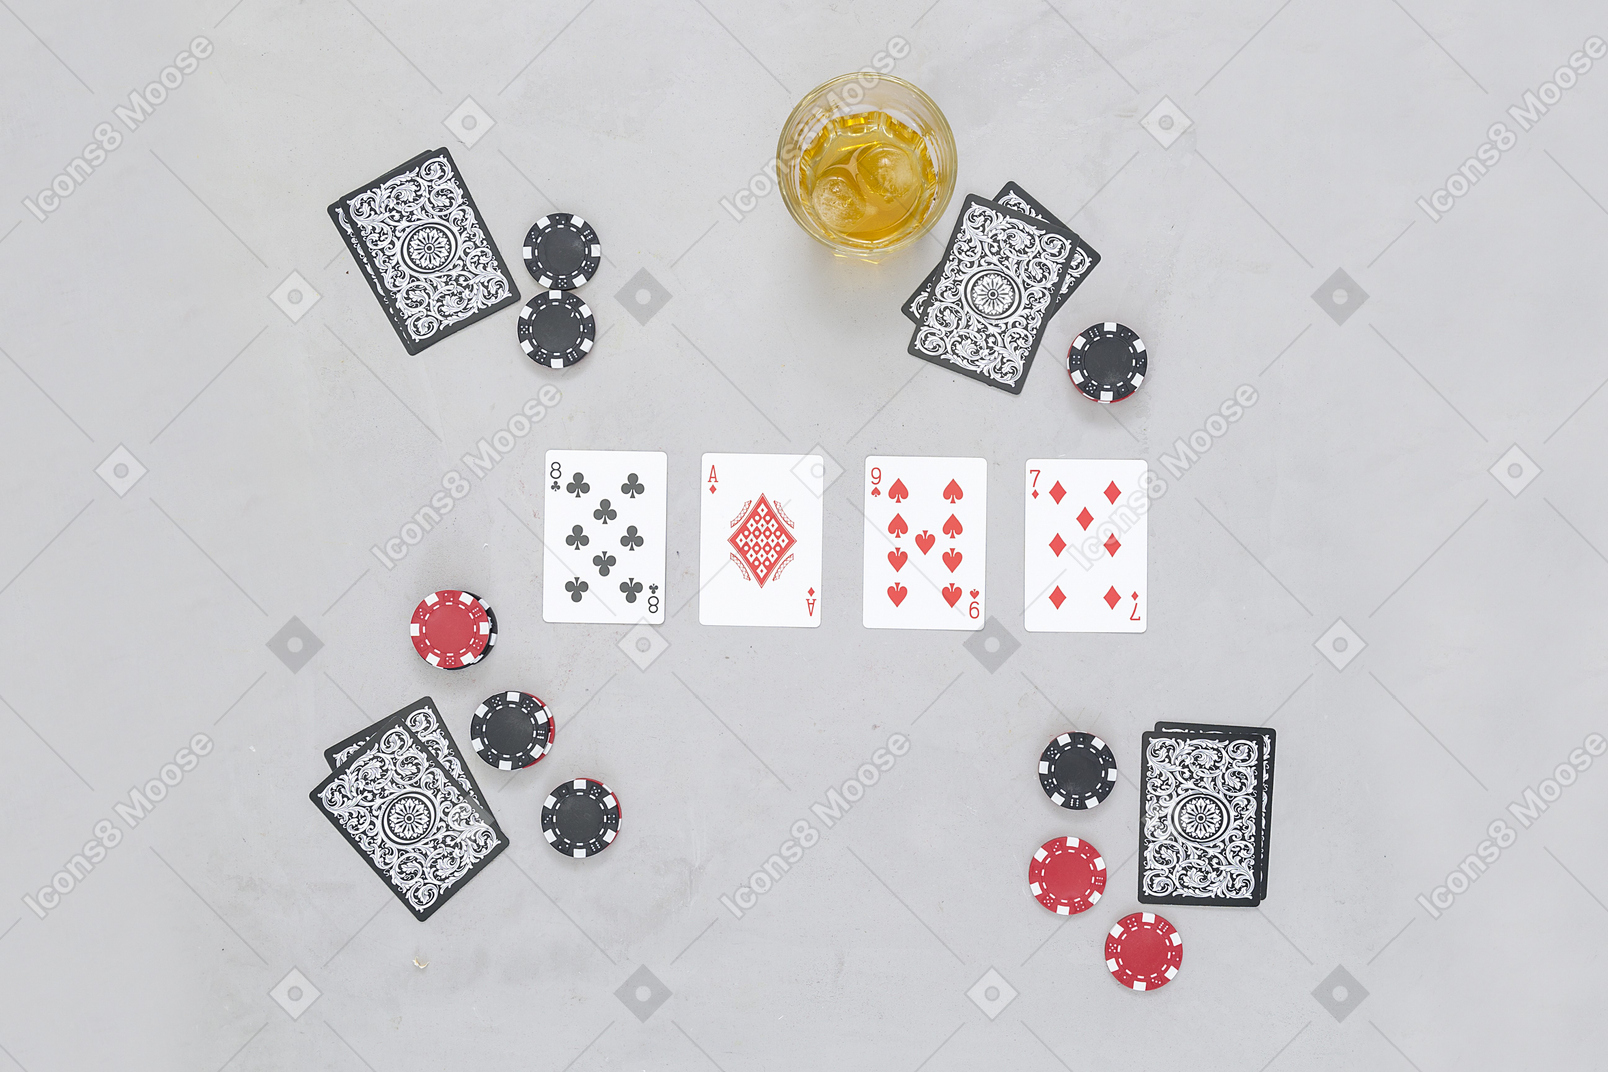 ボードカードゲームで遊ぶのは面白いです